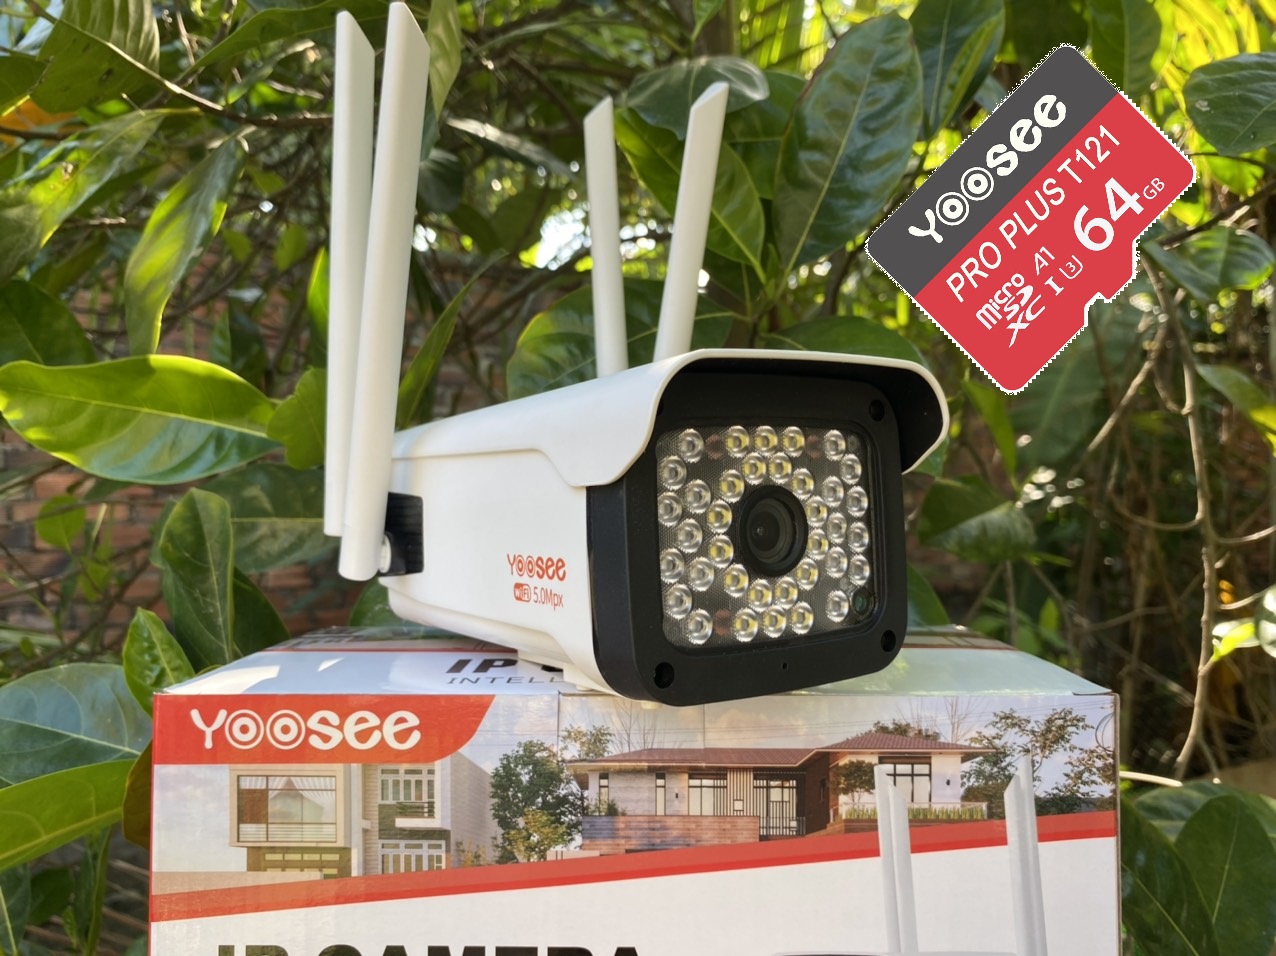 camera wifi yoosee ngoài trời 1080p 4 râu kèm thẻ 64gb - camera ip yoosee 3.0mp ngoài trời chống nước có mầu ban đêm - hàng nhập khẩu